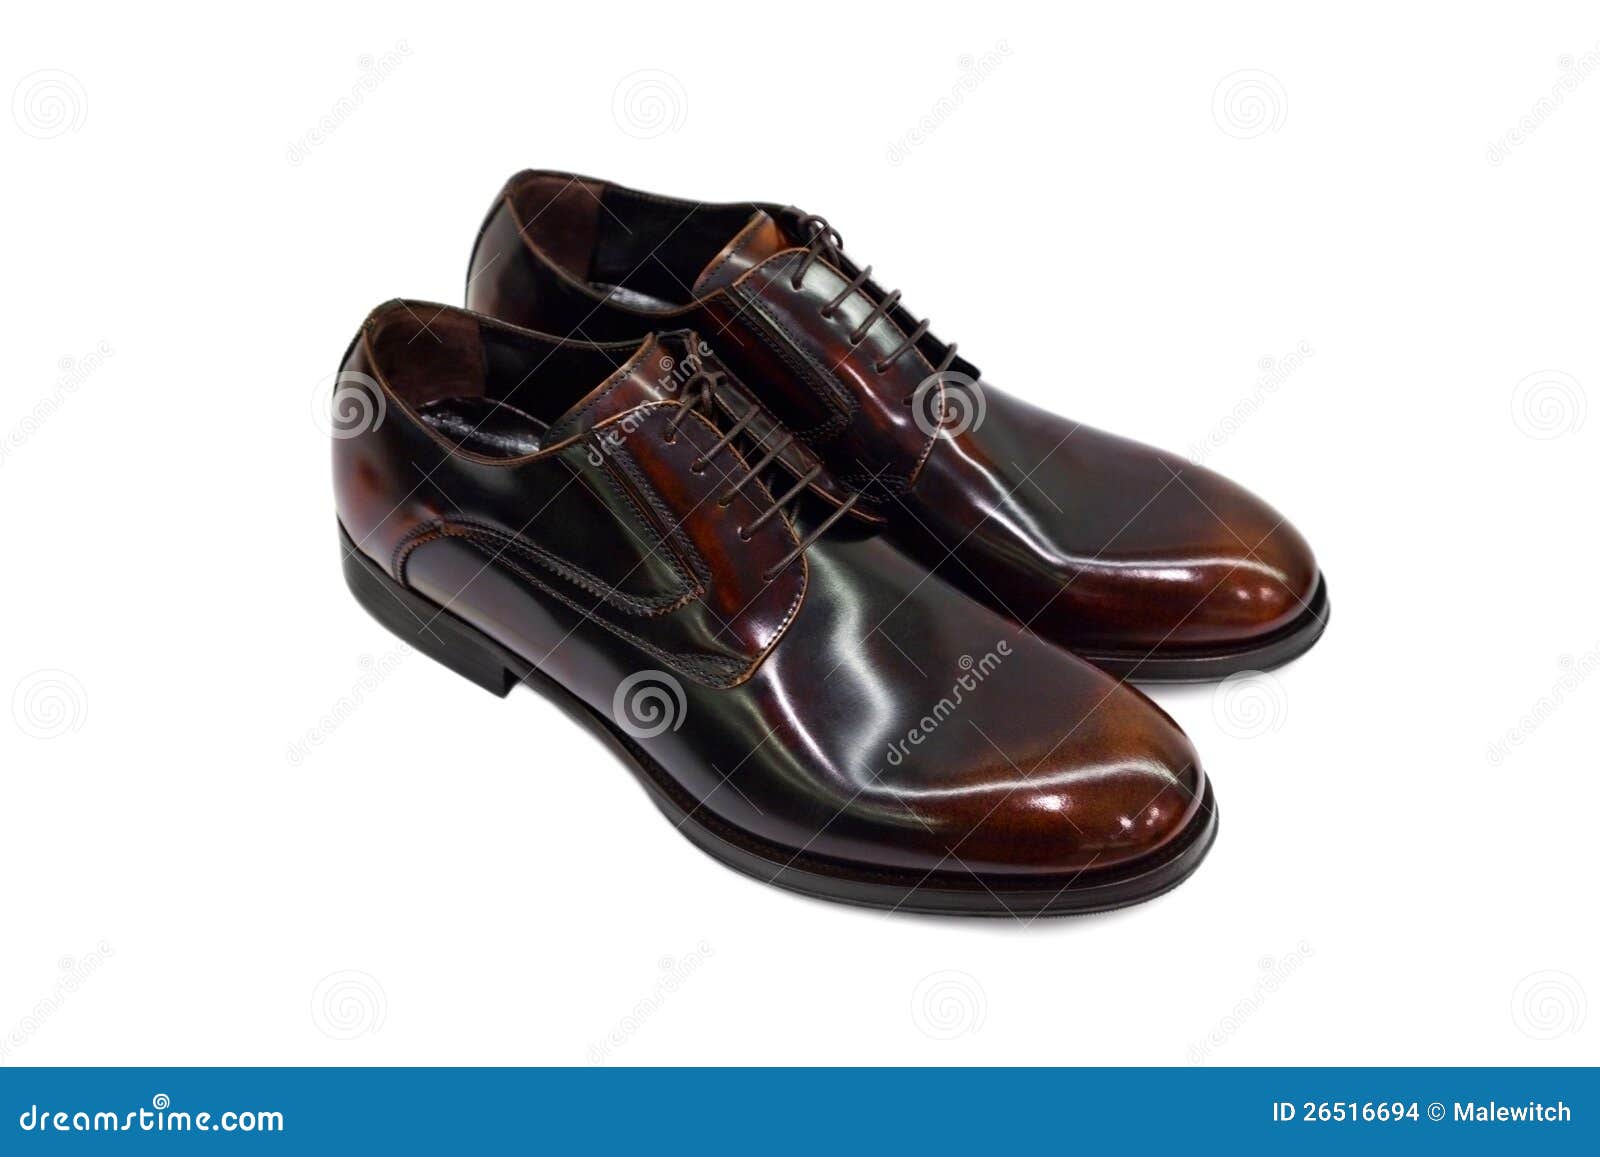 Maschio shoes-2 del Brown. Pattini maschii del Brown su priorità bassa bianca.